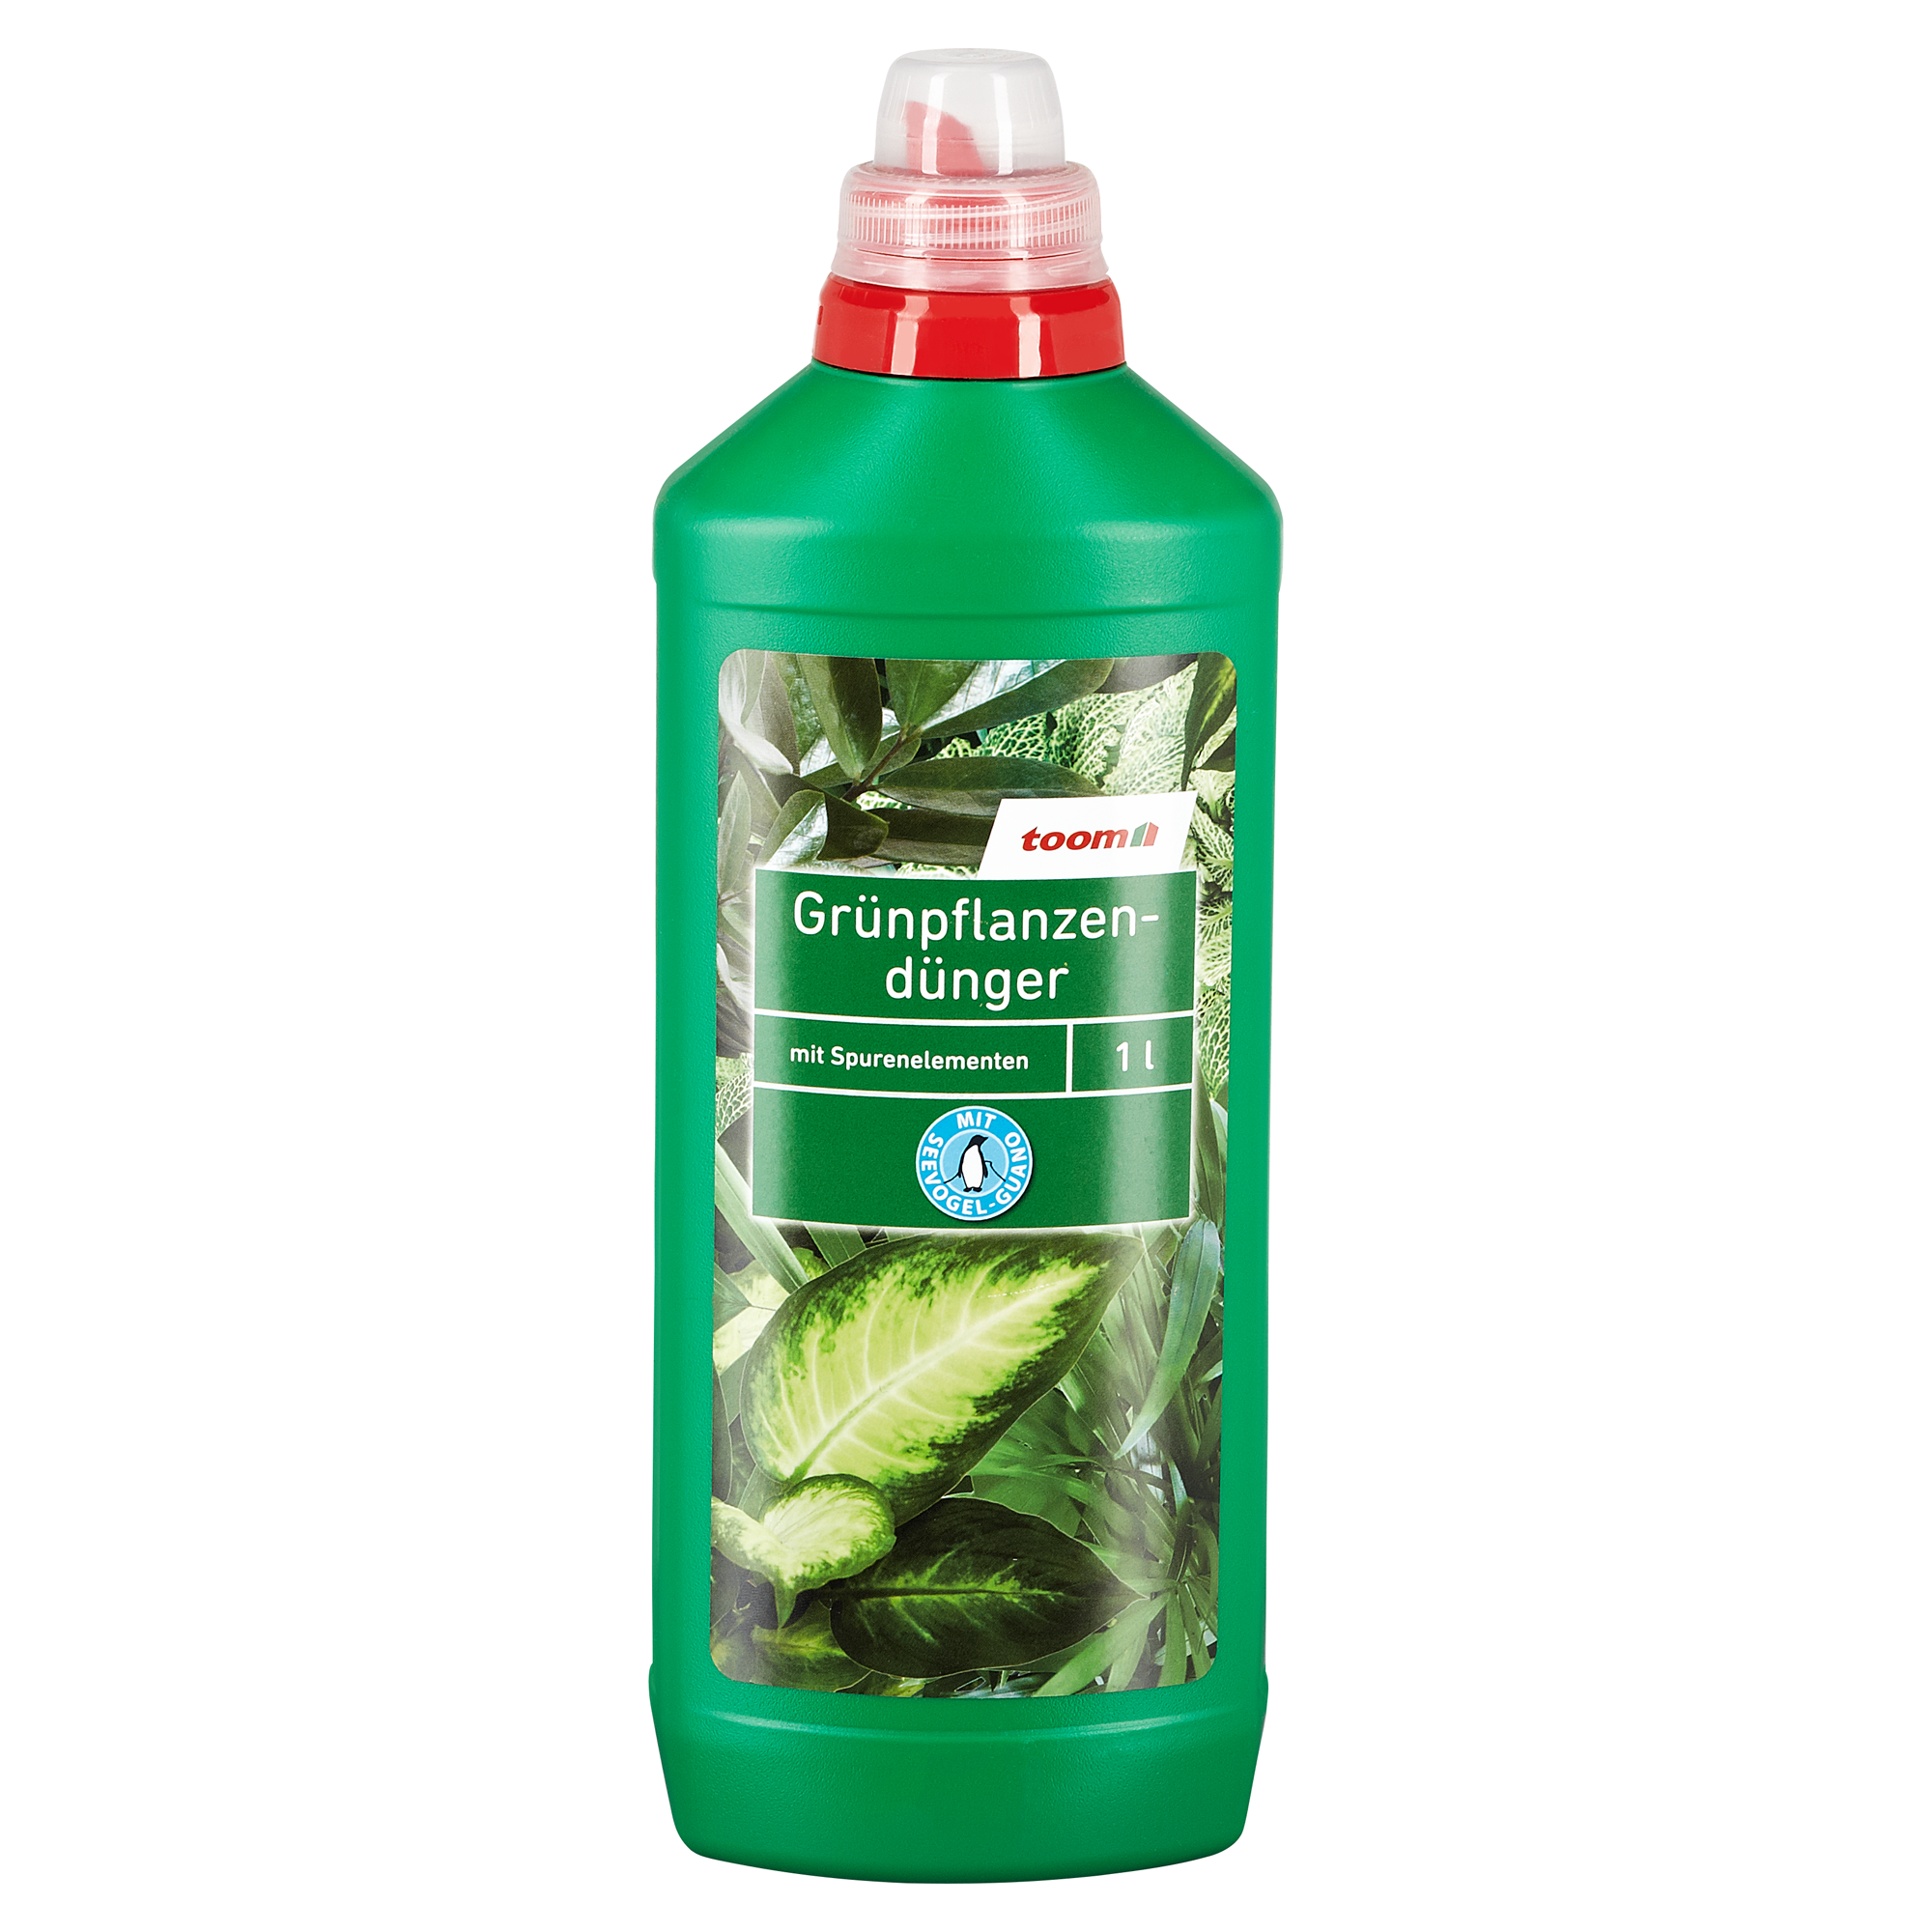 Grünpflanzendünger mit Guano 1 l + product picture